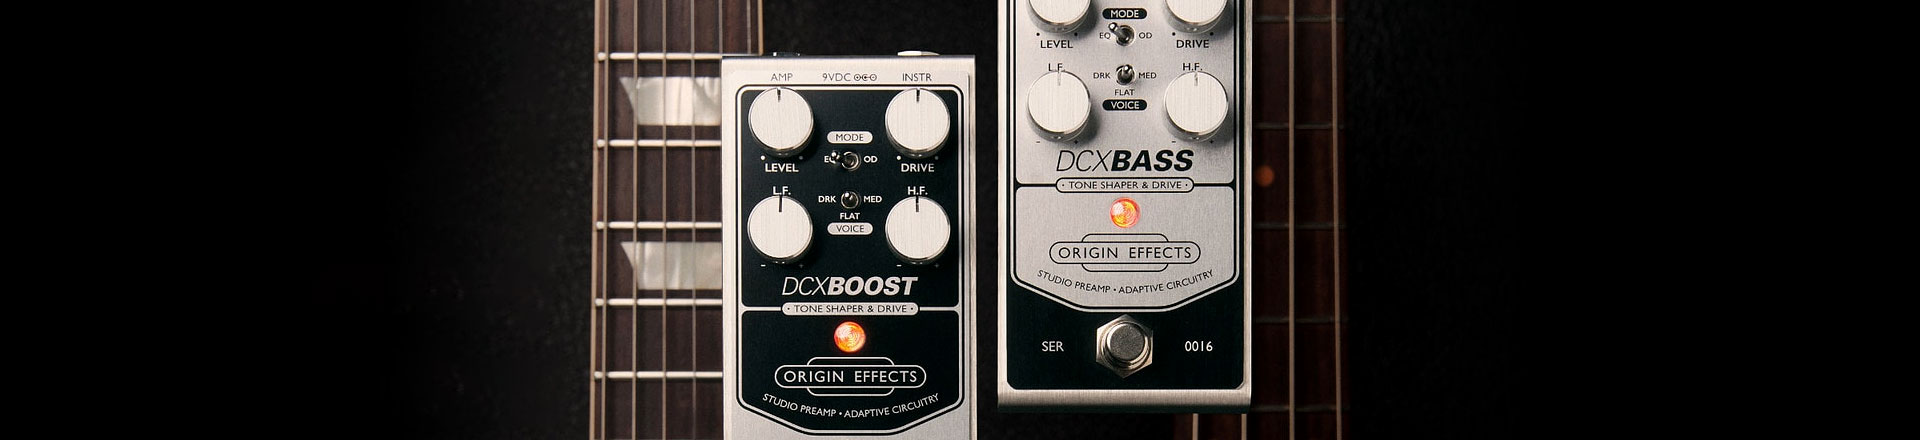 DCX Boost & DCX Bass - Origin Effects przedstawia kostkową wersję UA 610 preamp